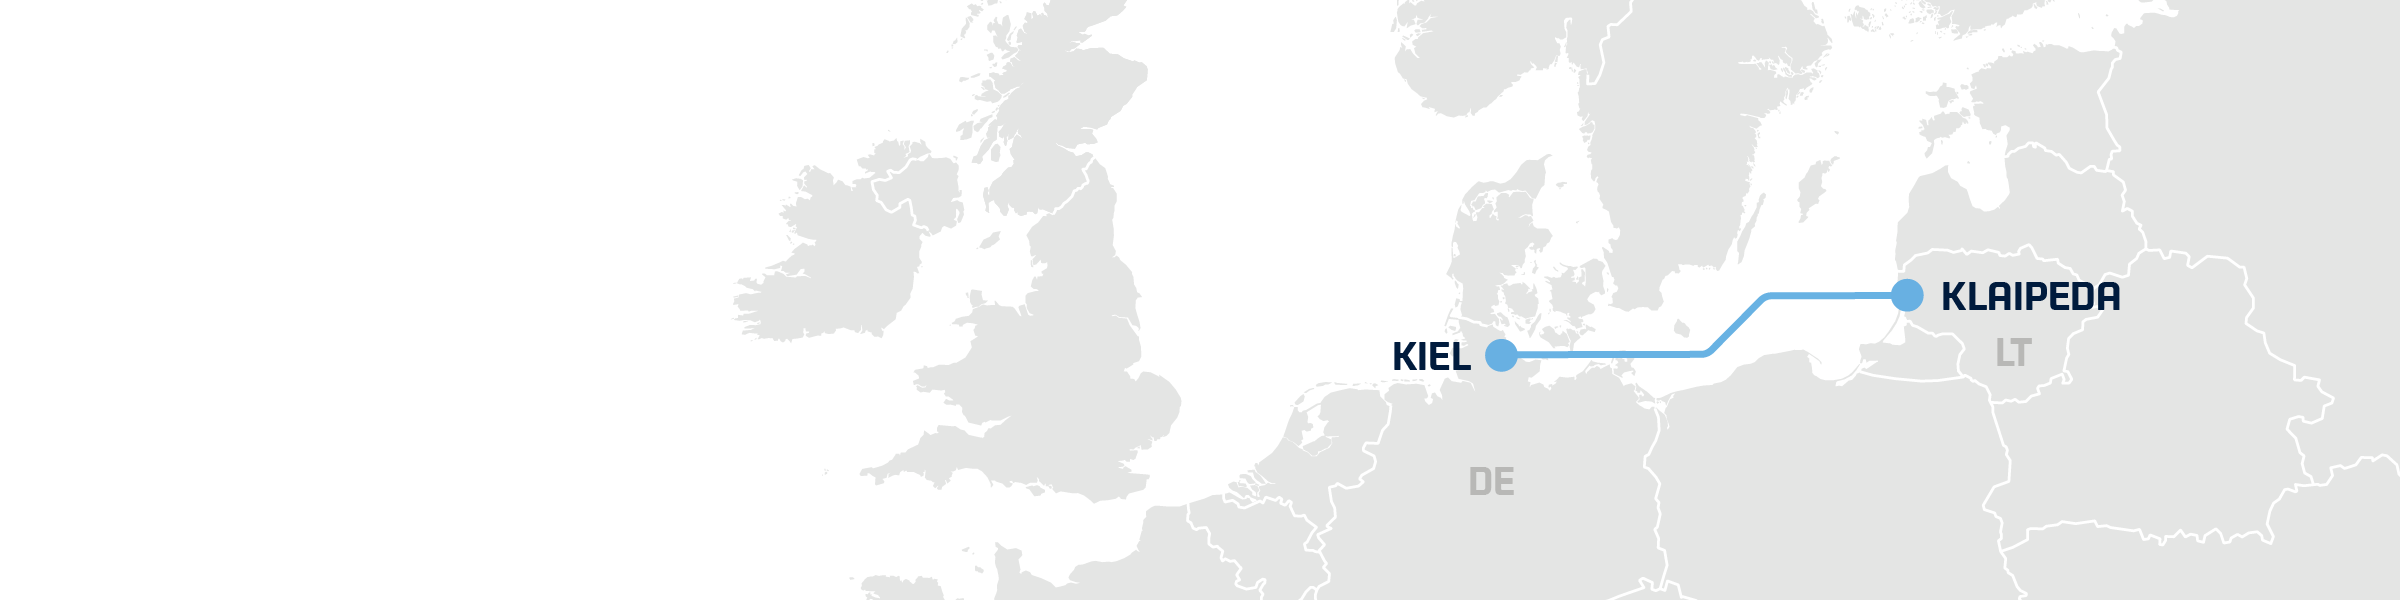 Klaipeda-Kiel hero